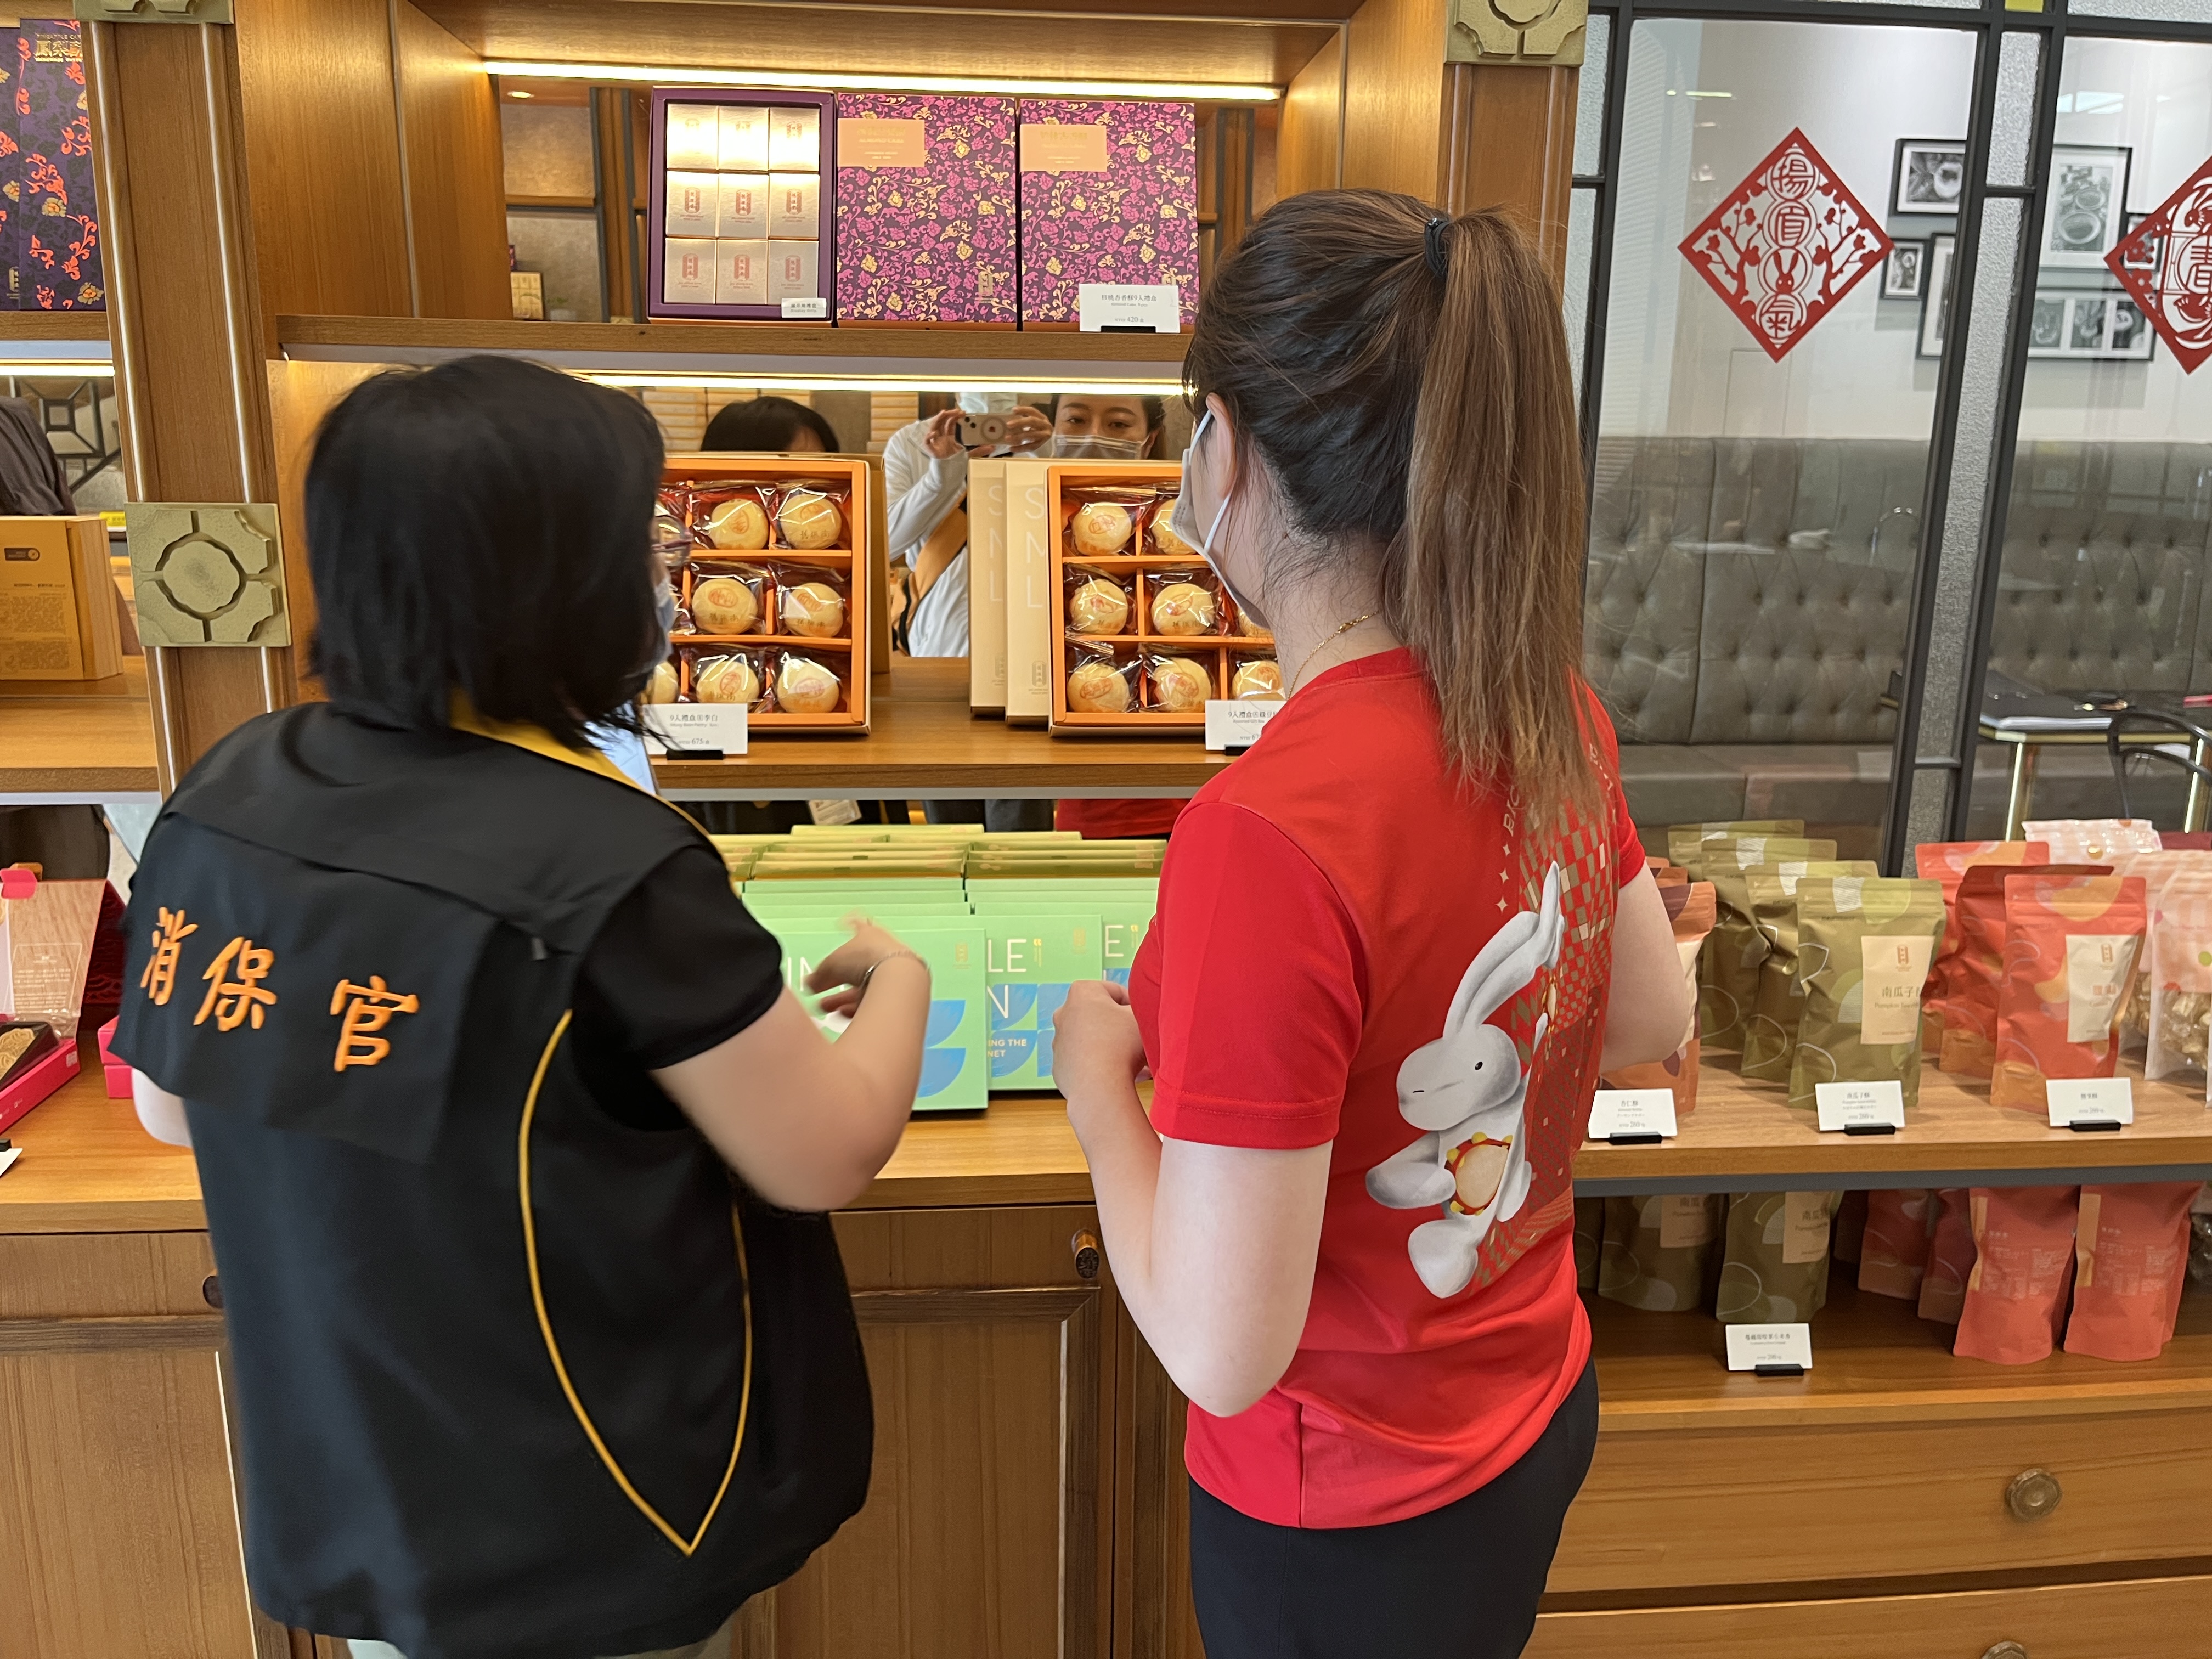 臺南訪查中秋食品價格及安全  蛋黃酥漲約百分之7至15幅度較高